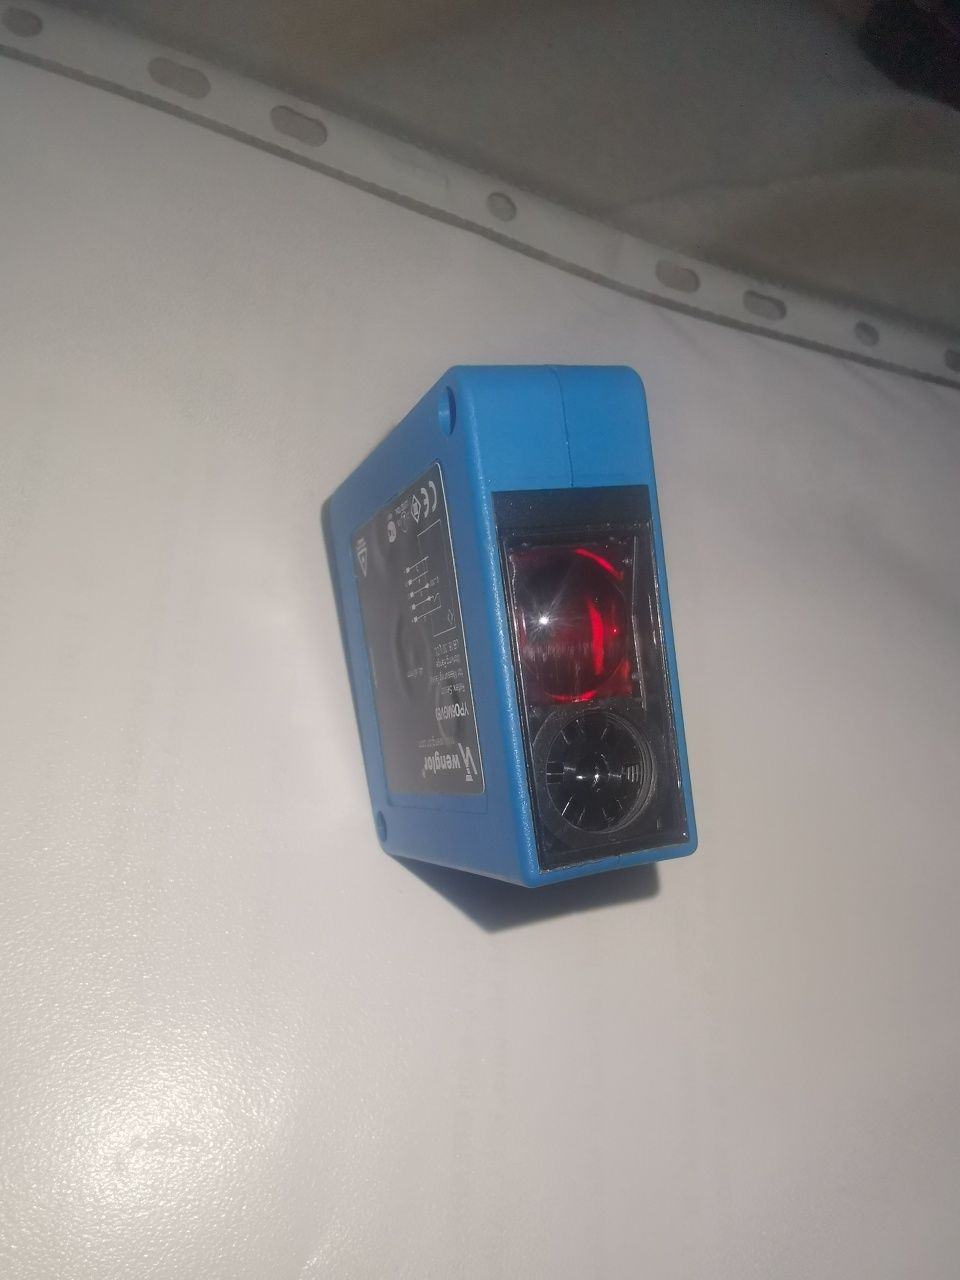 Senzor laser distanta Wenglor YP06MGV80